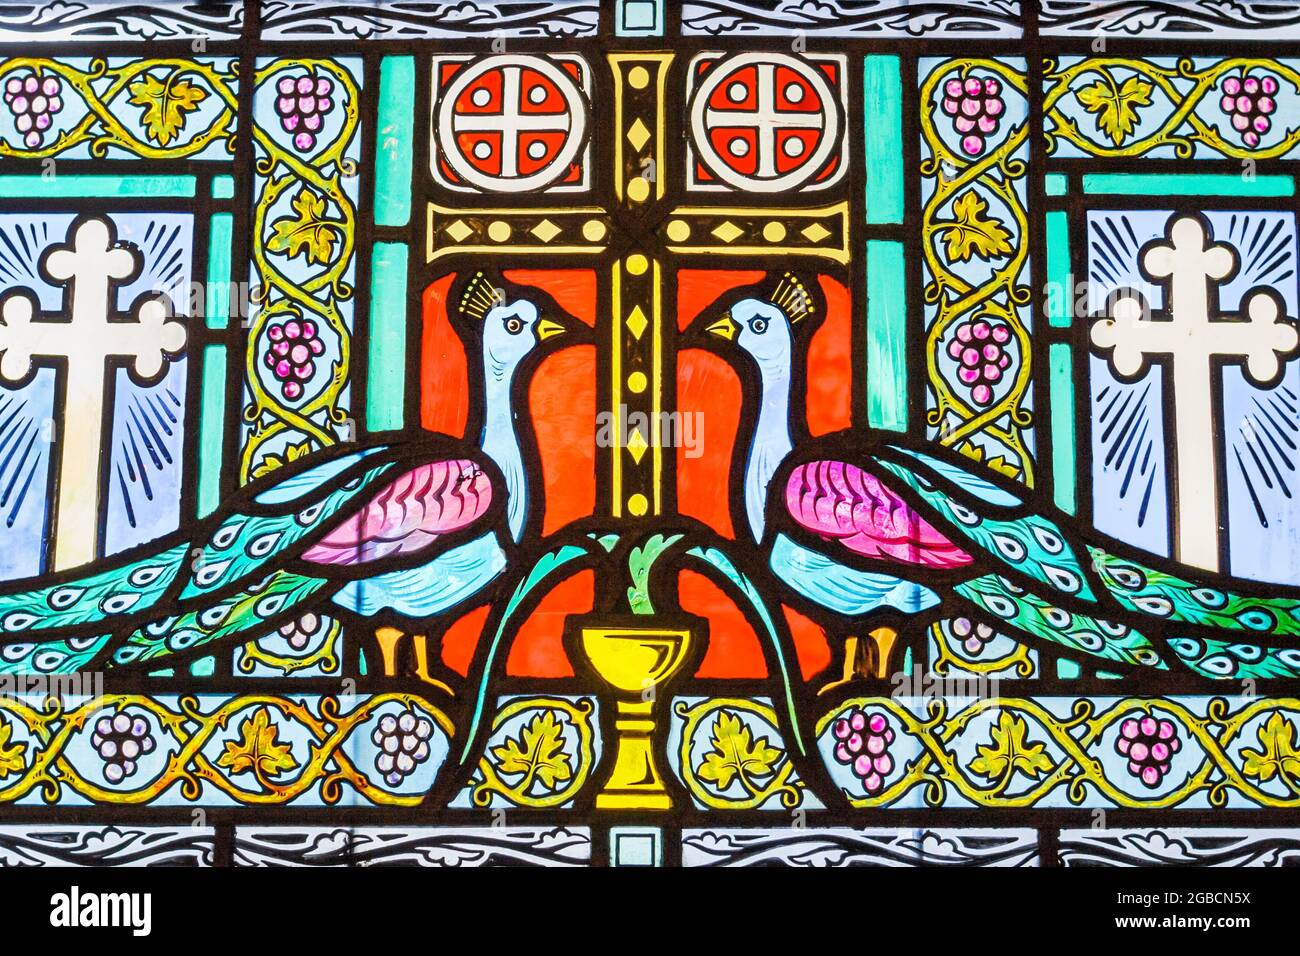 Miami Florida, Coral Gables, Cattedrale Greco-Ortodossa di Santa Sofia, opere d'arte religiosa con vetrate colorate, Foto Stock